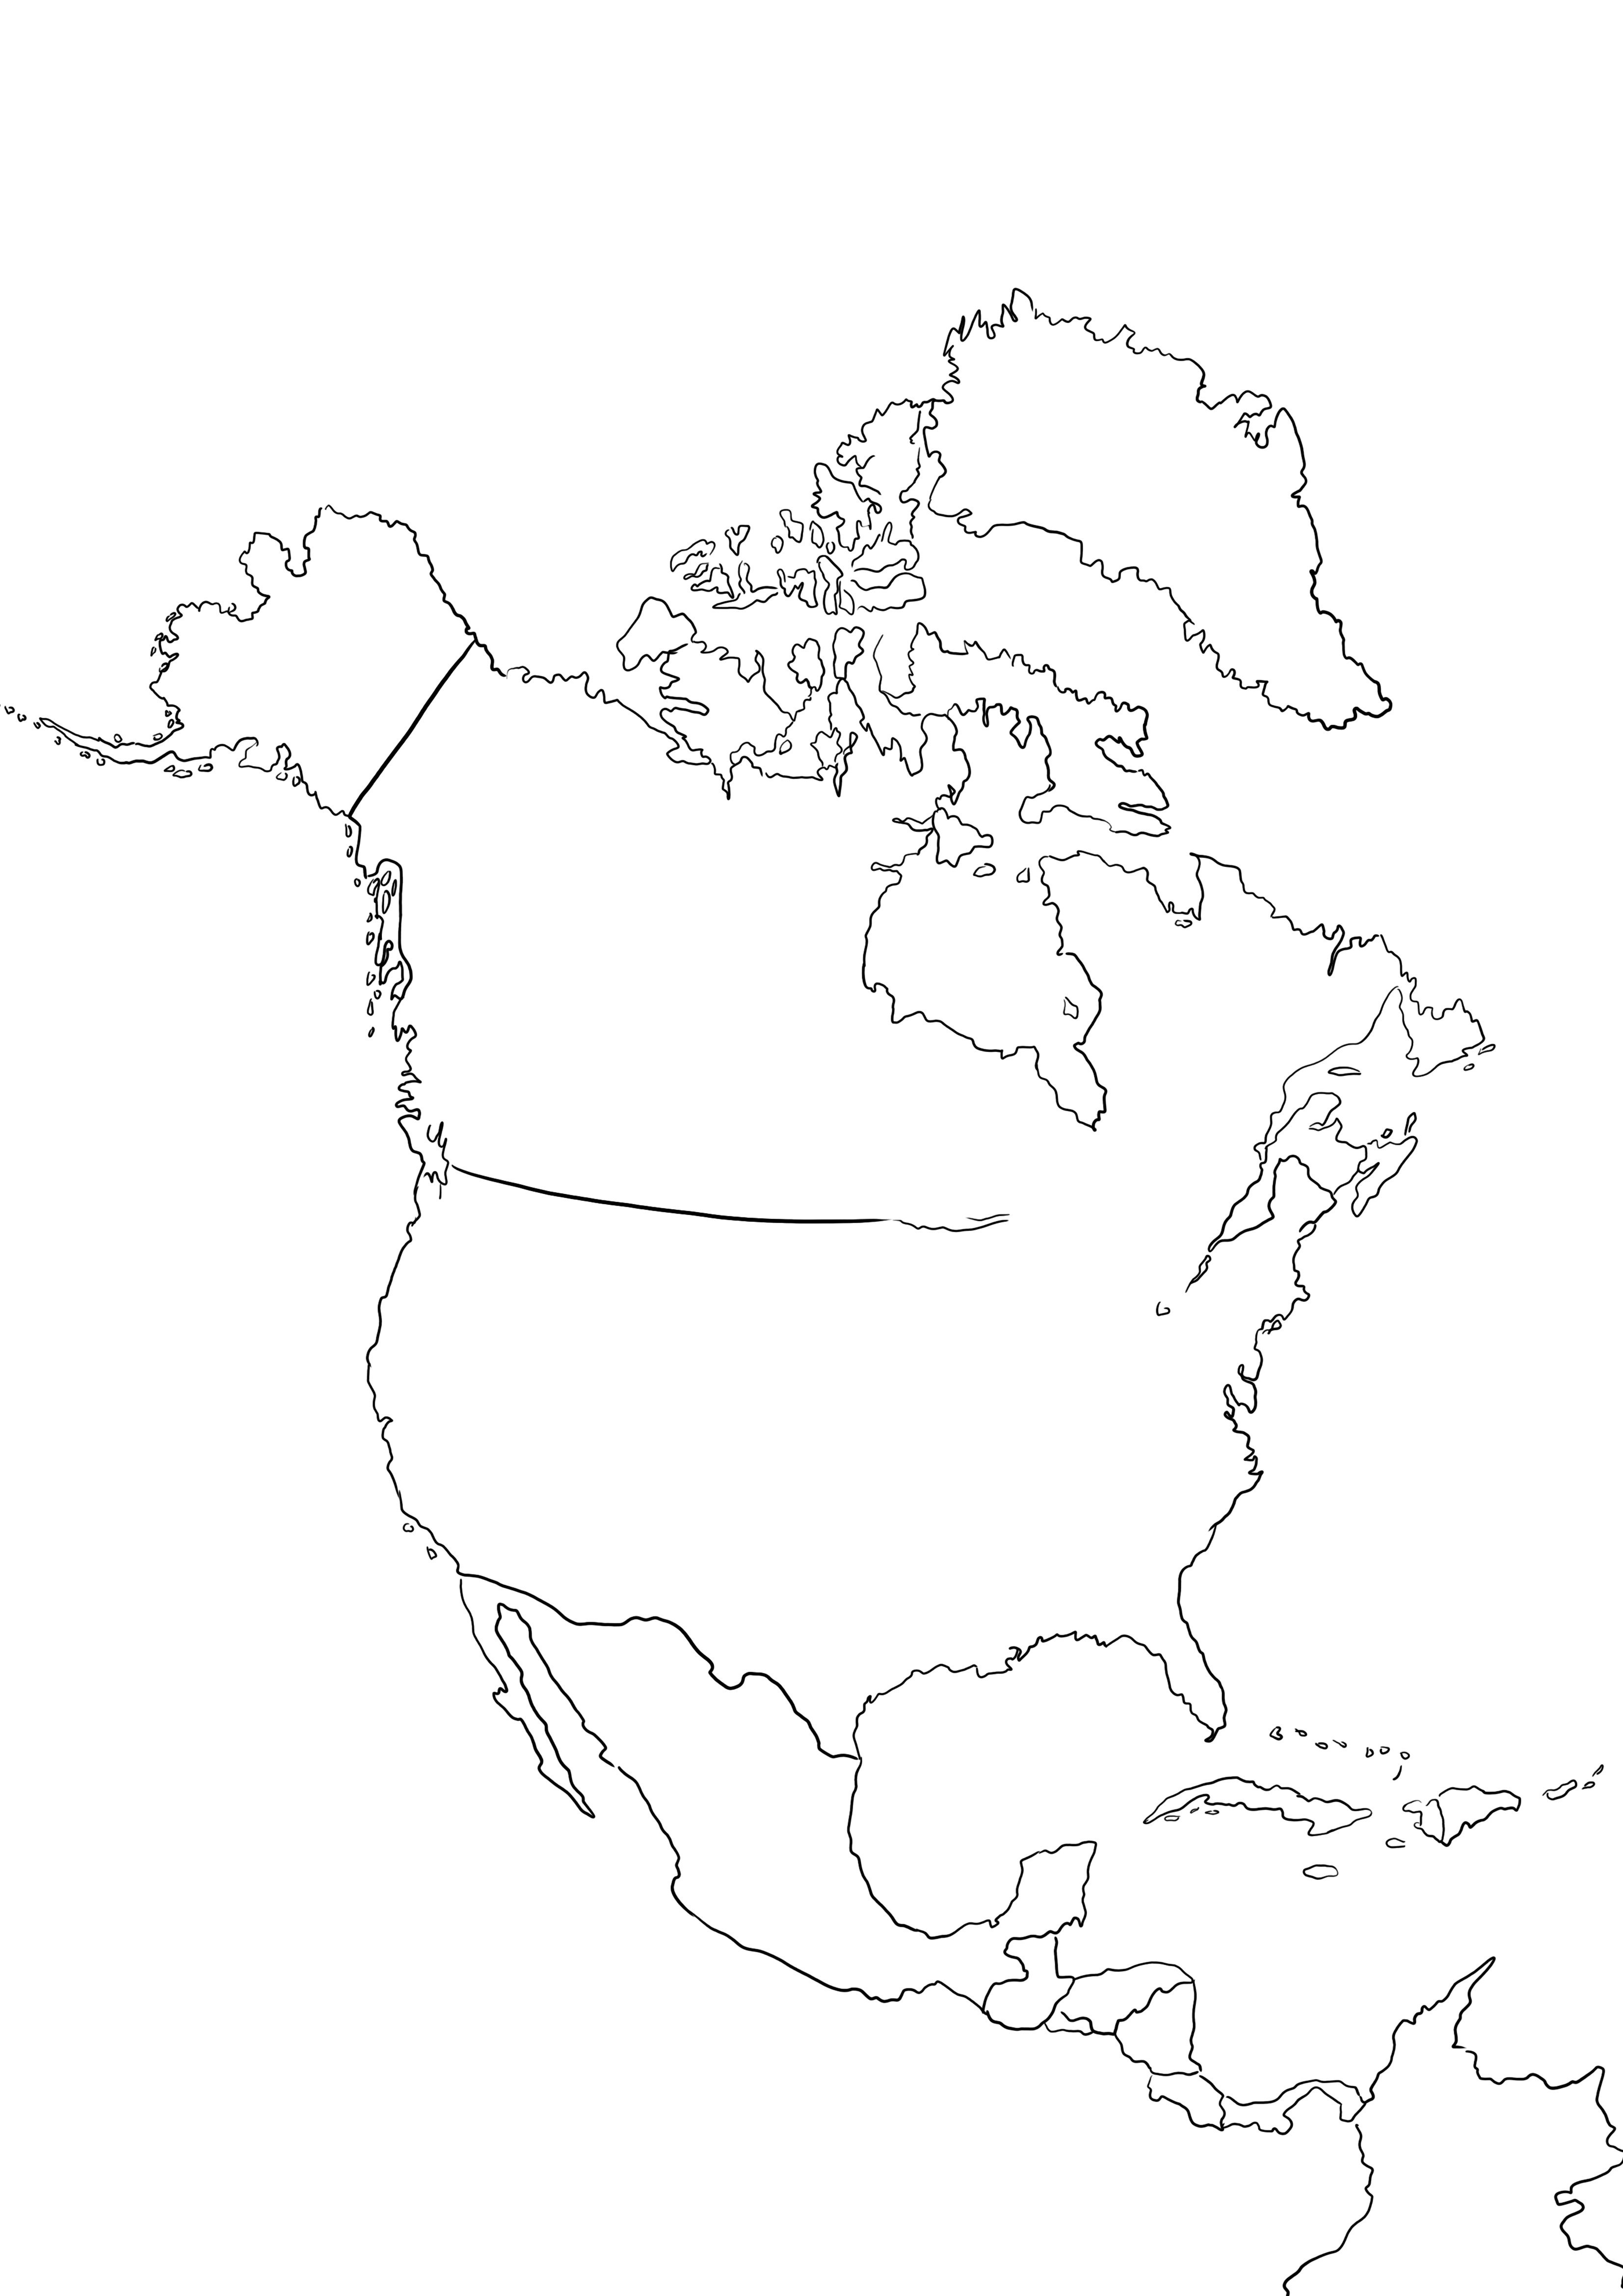 Mapa de América del Norte para imprimir y colorear gratis para que los niños aprendan sobre los países